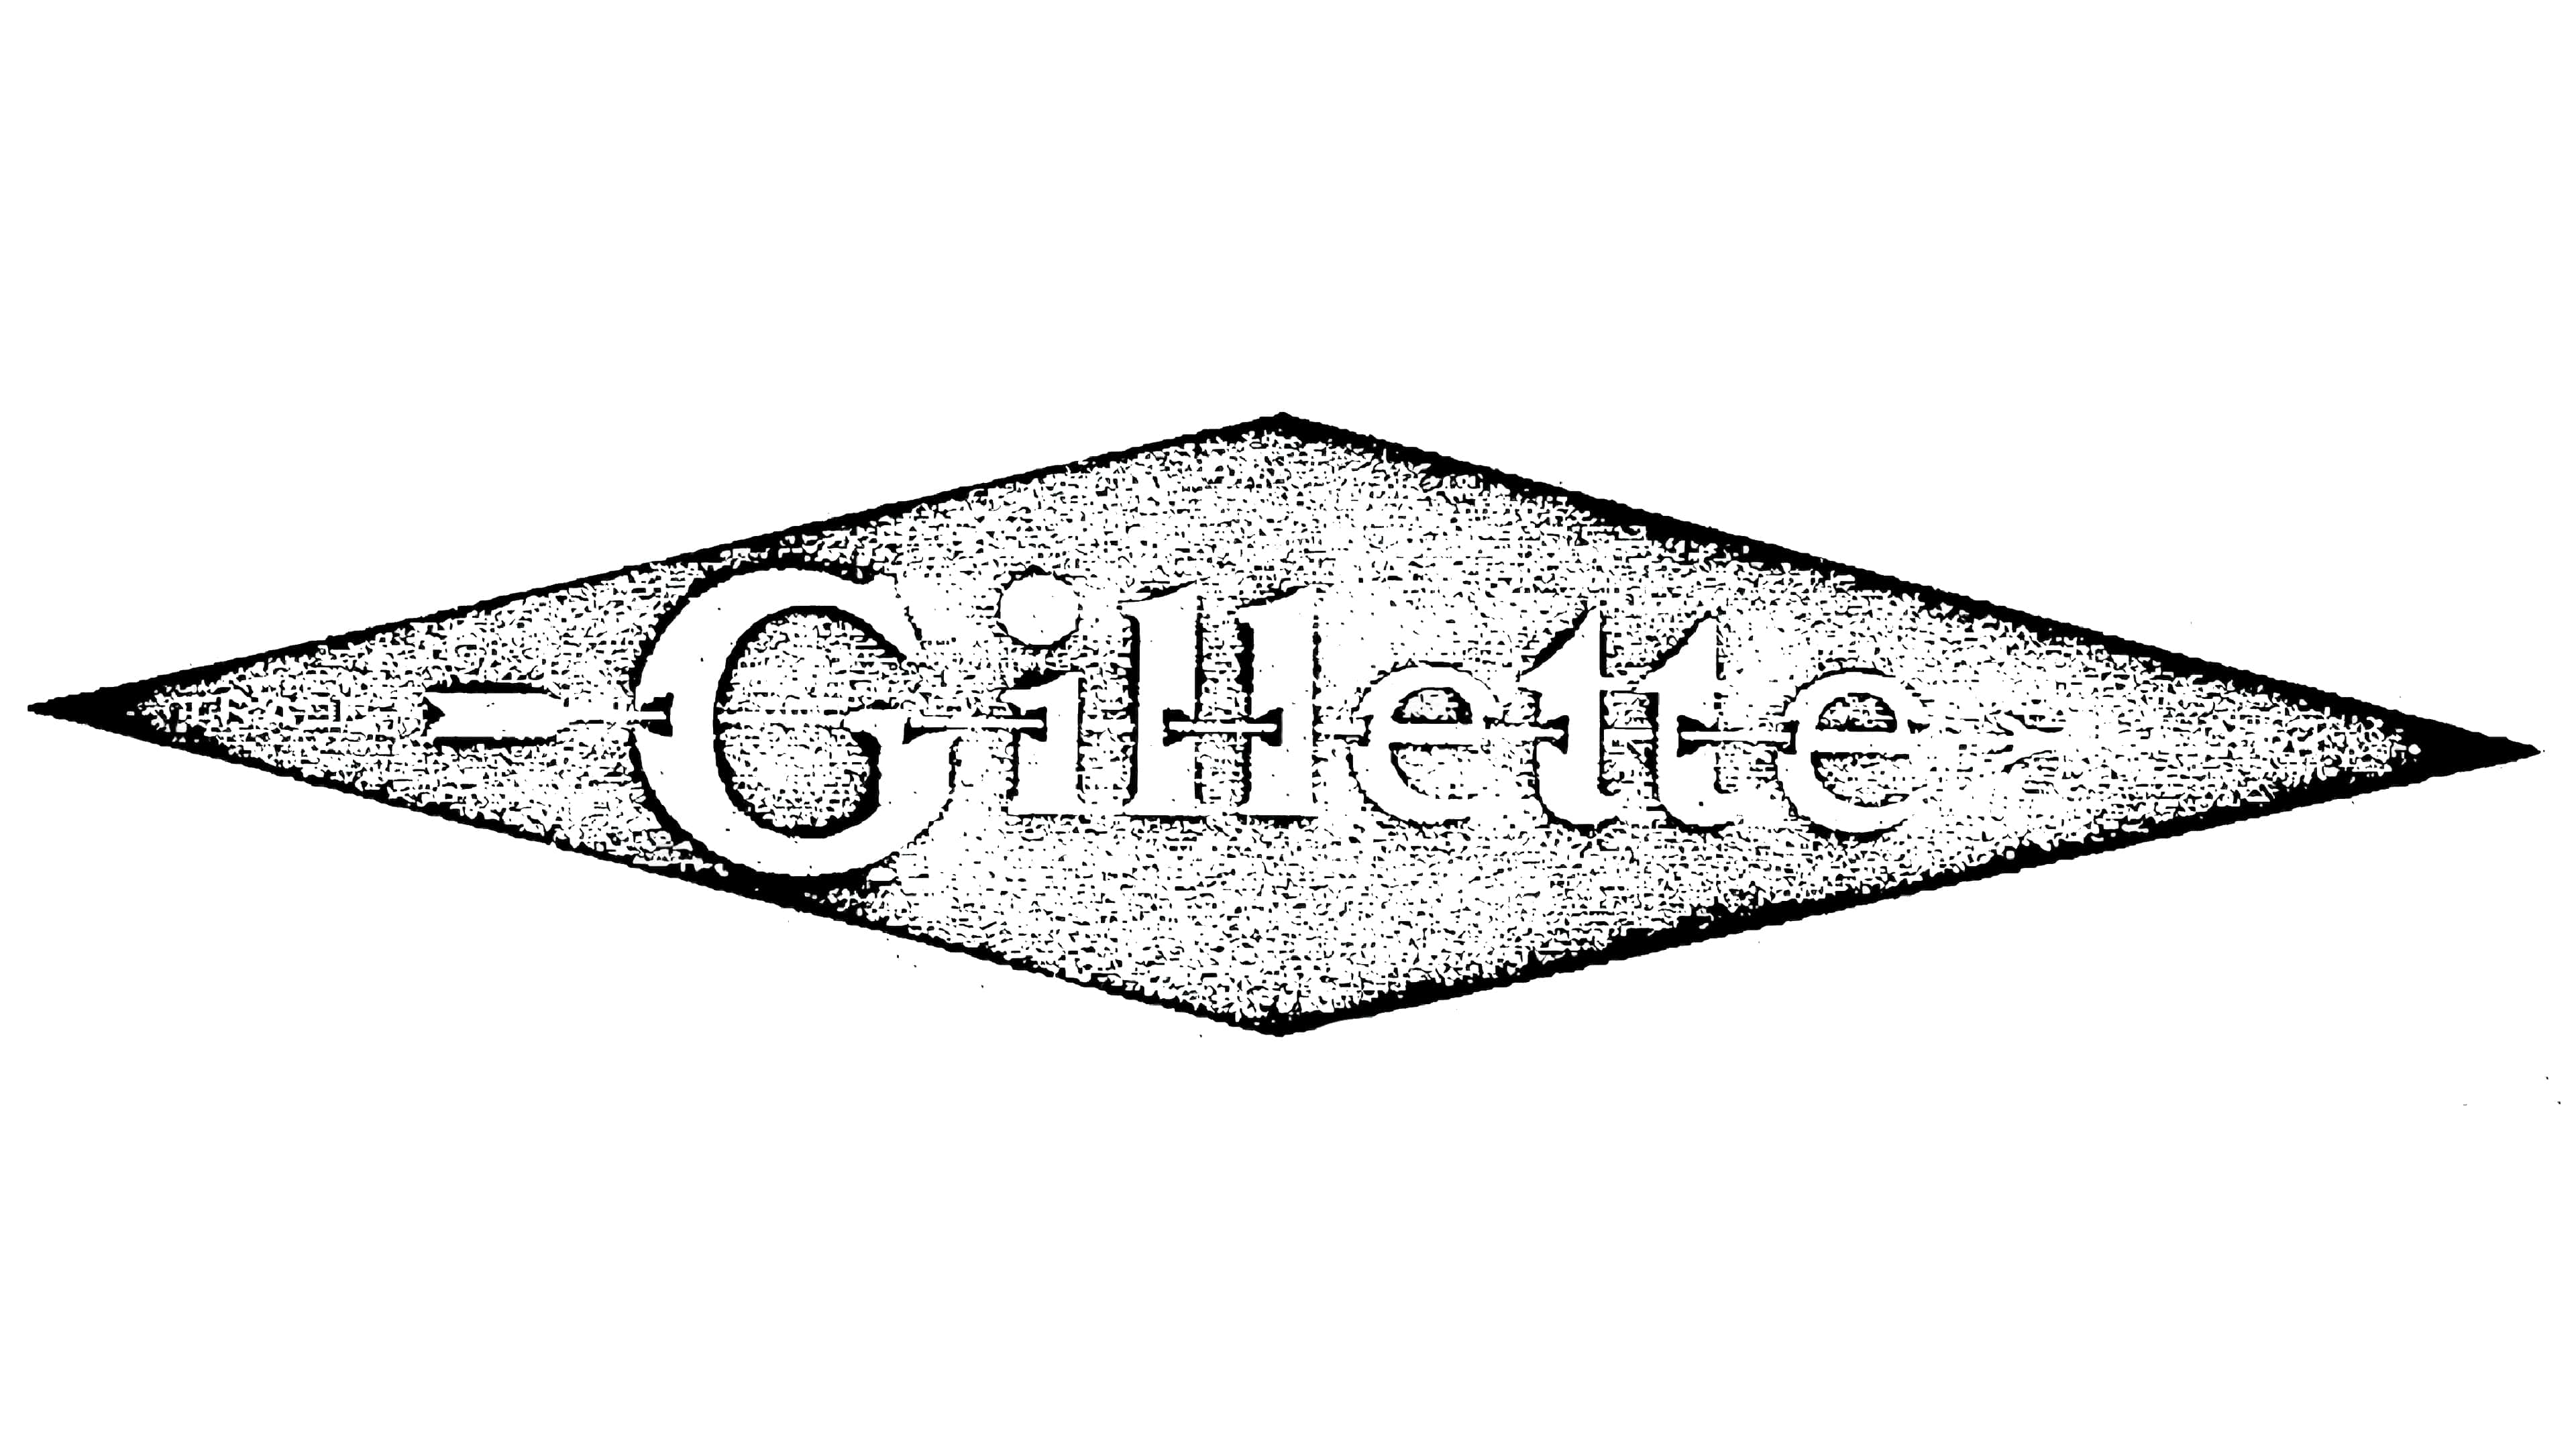 Mẫu thiết kế logo thương hiệu công ty GILLETTE 3